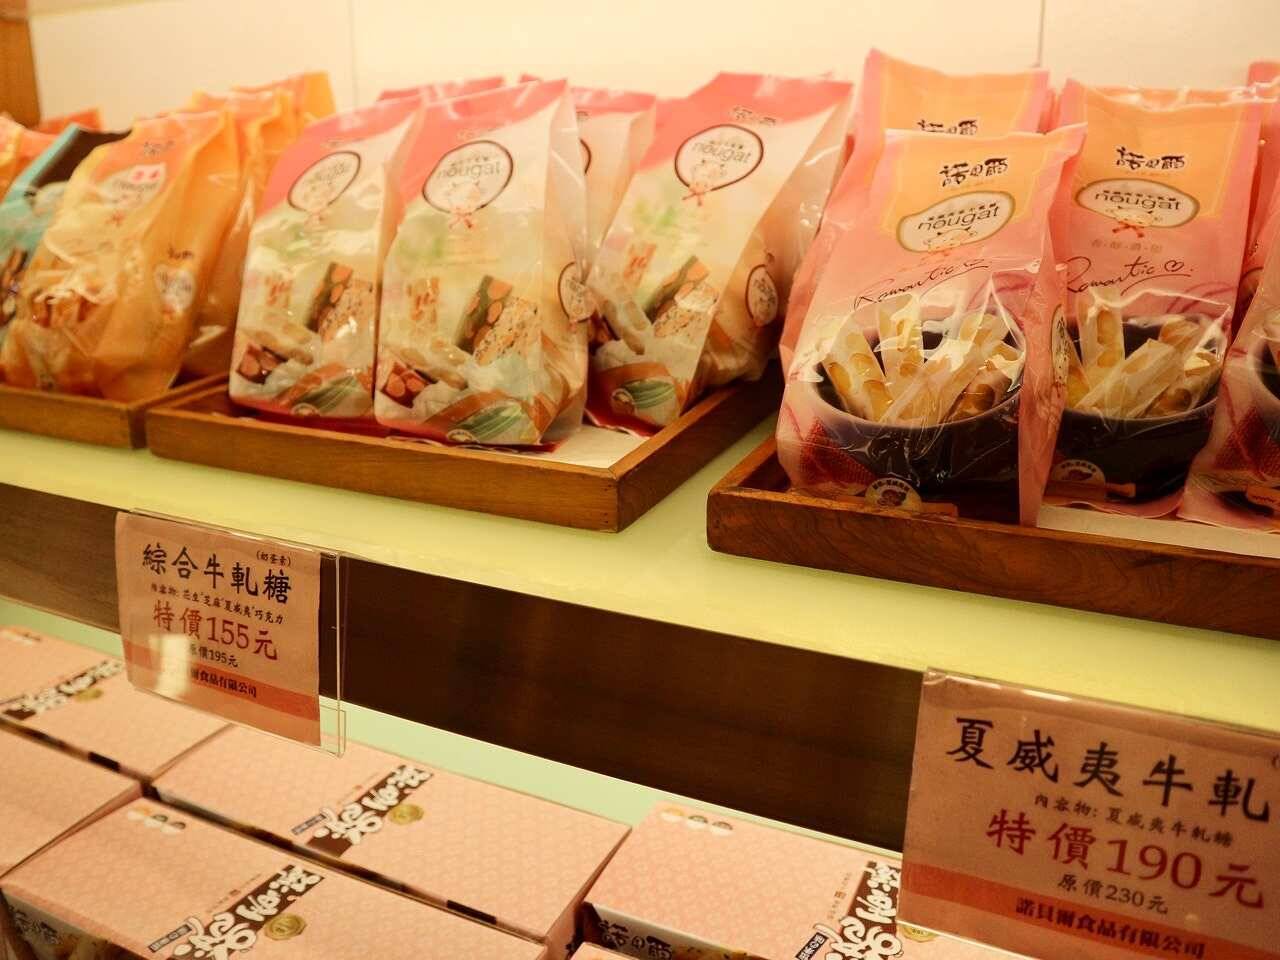 【台湾宜蘭土産】パンナコッタ入りロールケーキの人気店「諾貝爾」実食レポ